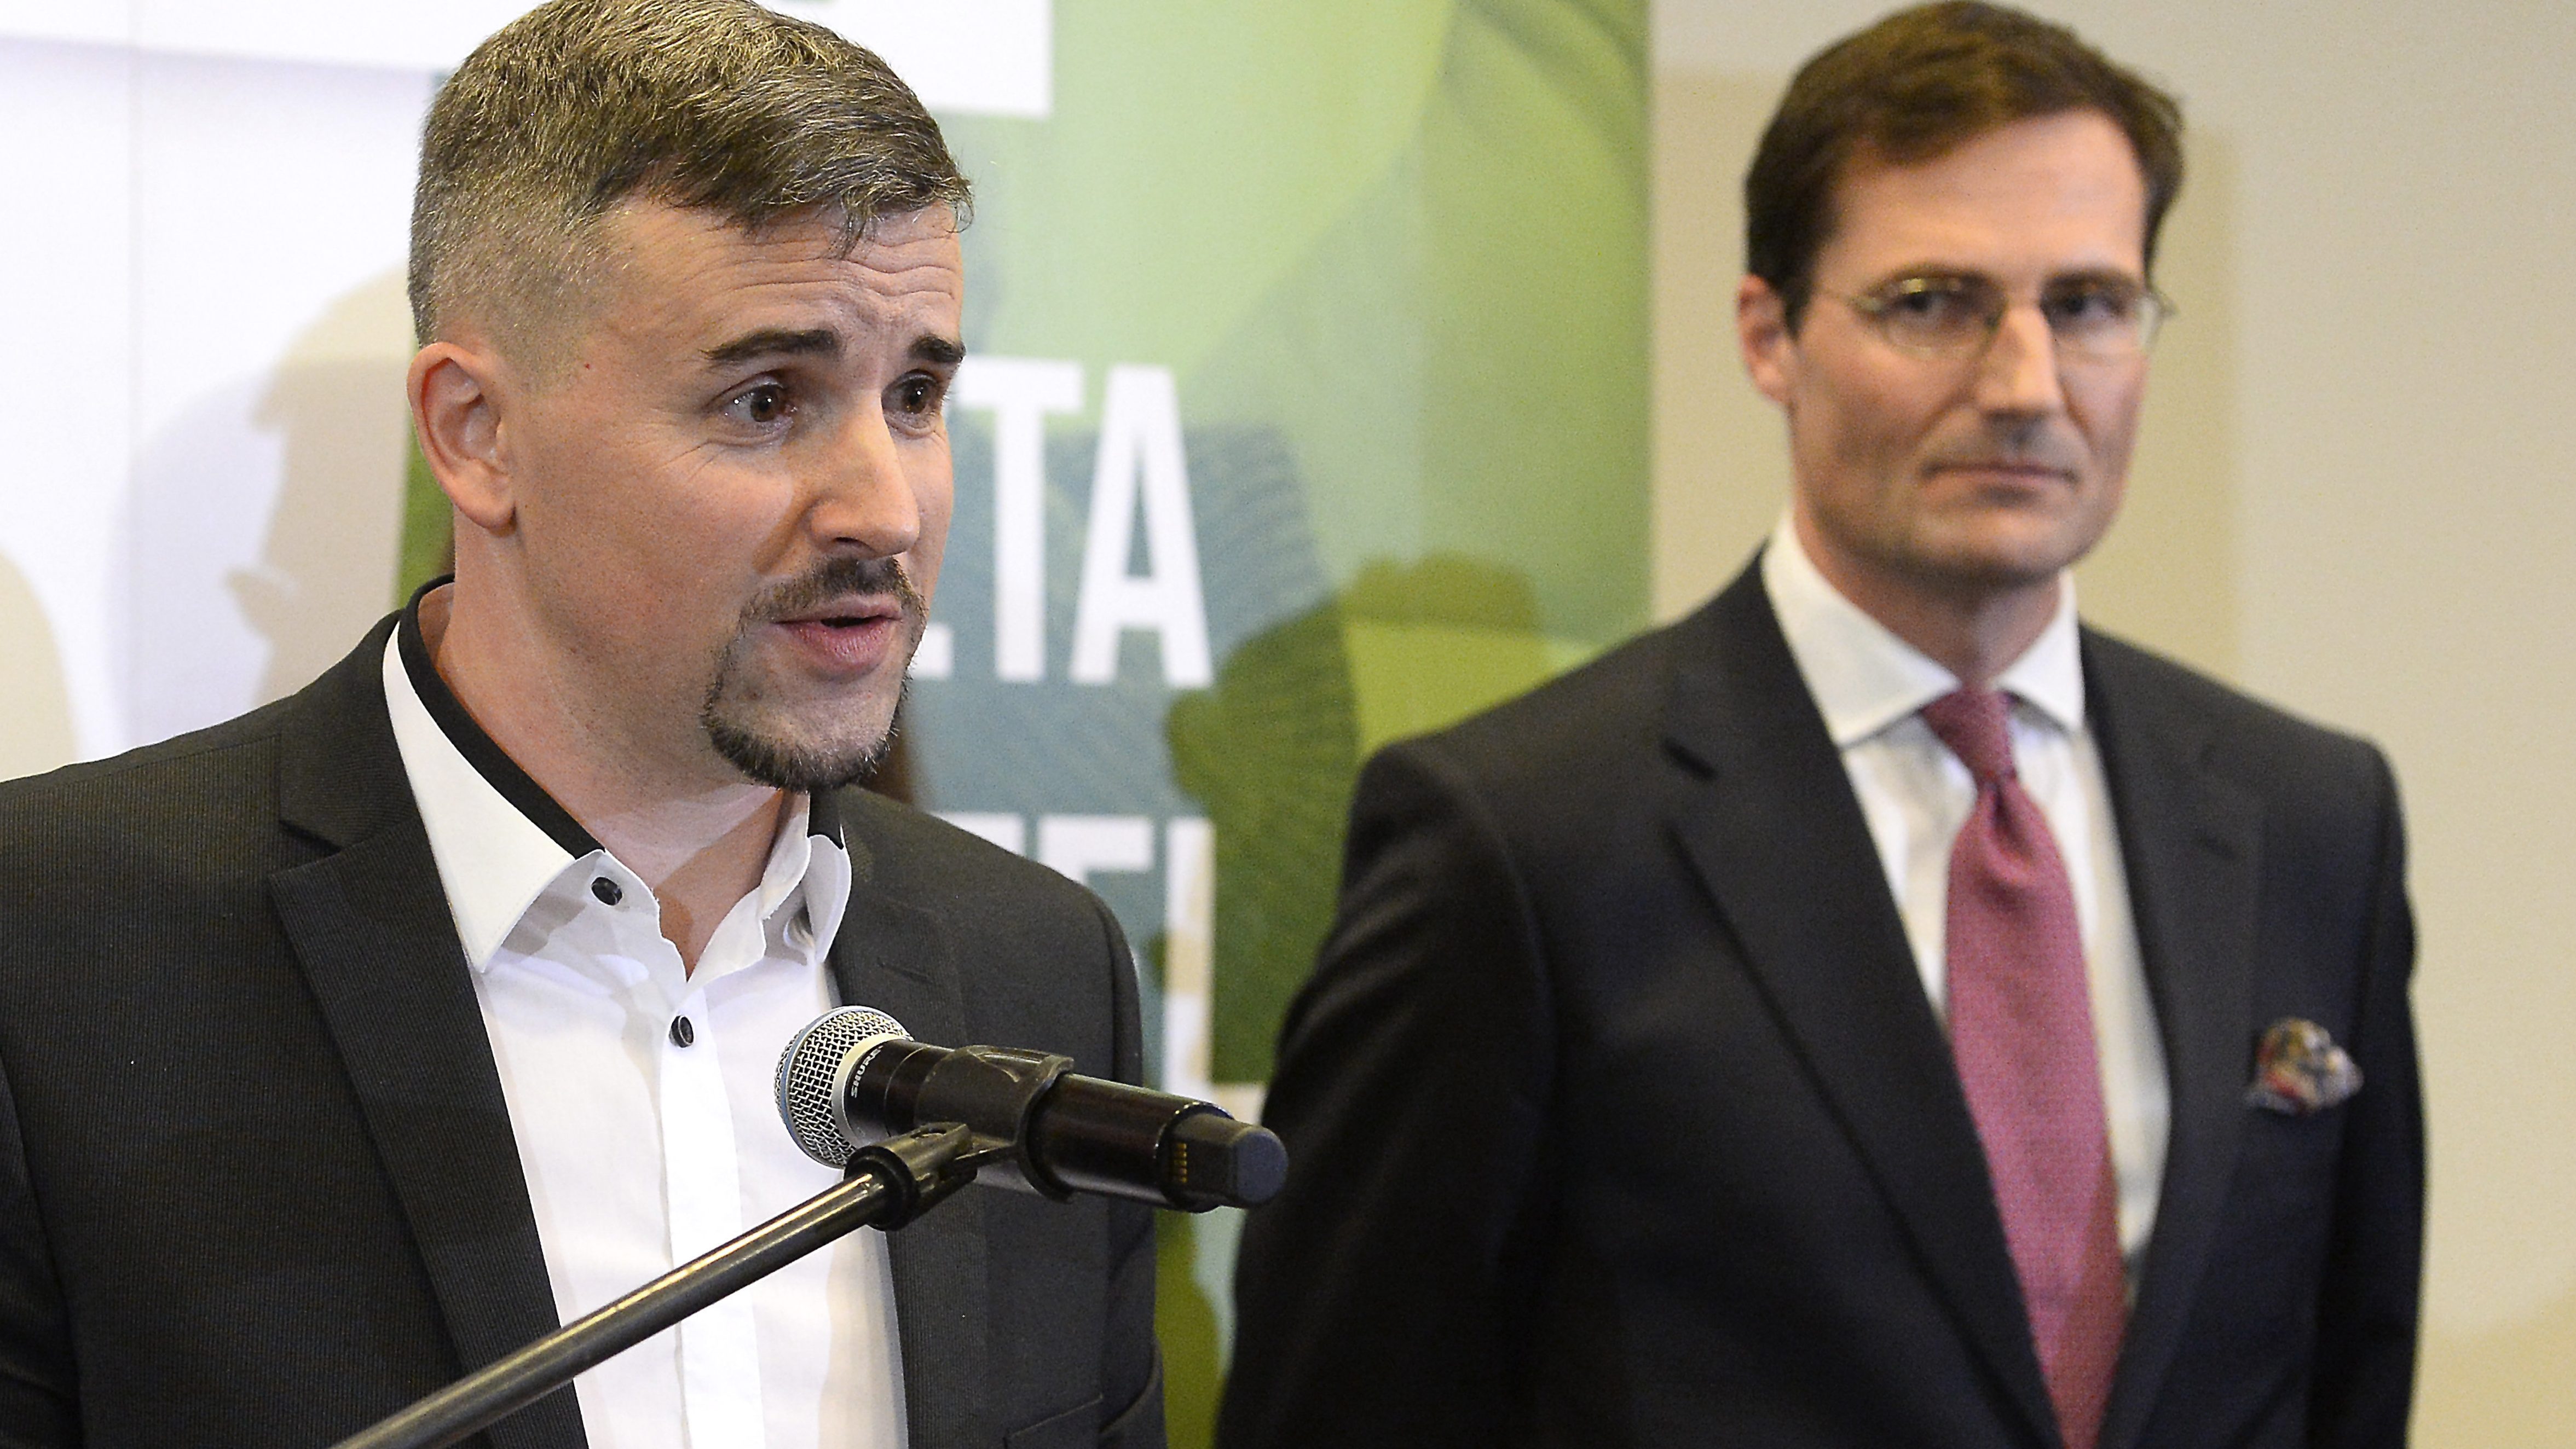 Adminisztrációs hiba miatt nem lehet jelölőszervezet a Jobbik a szeptemberi időközi választáson